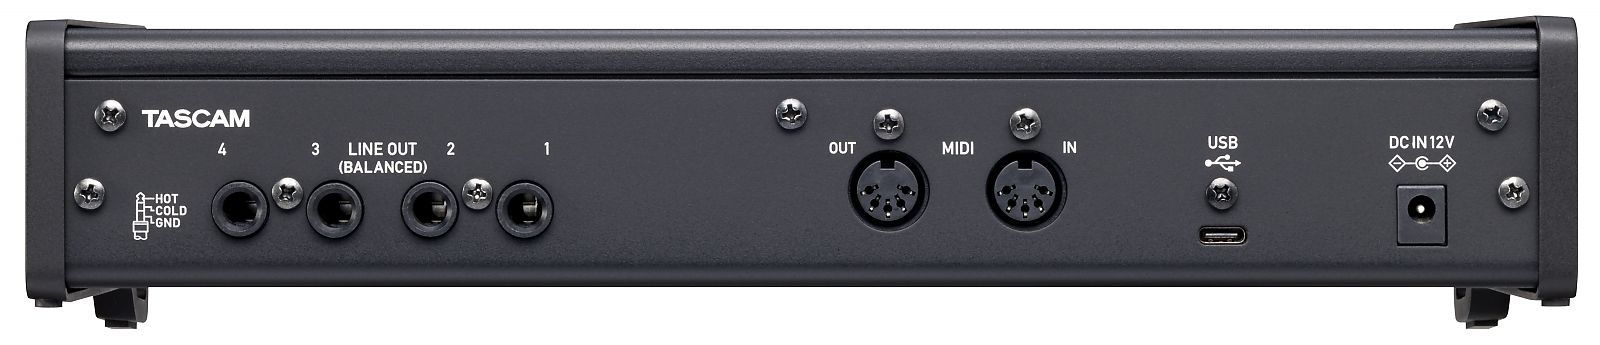 Tascam US-4x4HR USB Audio Interface 4-Kanal mit 4 Mikrofon-/Line-Eingängen